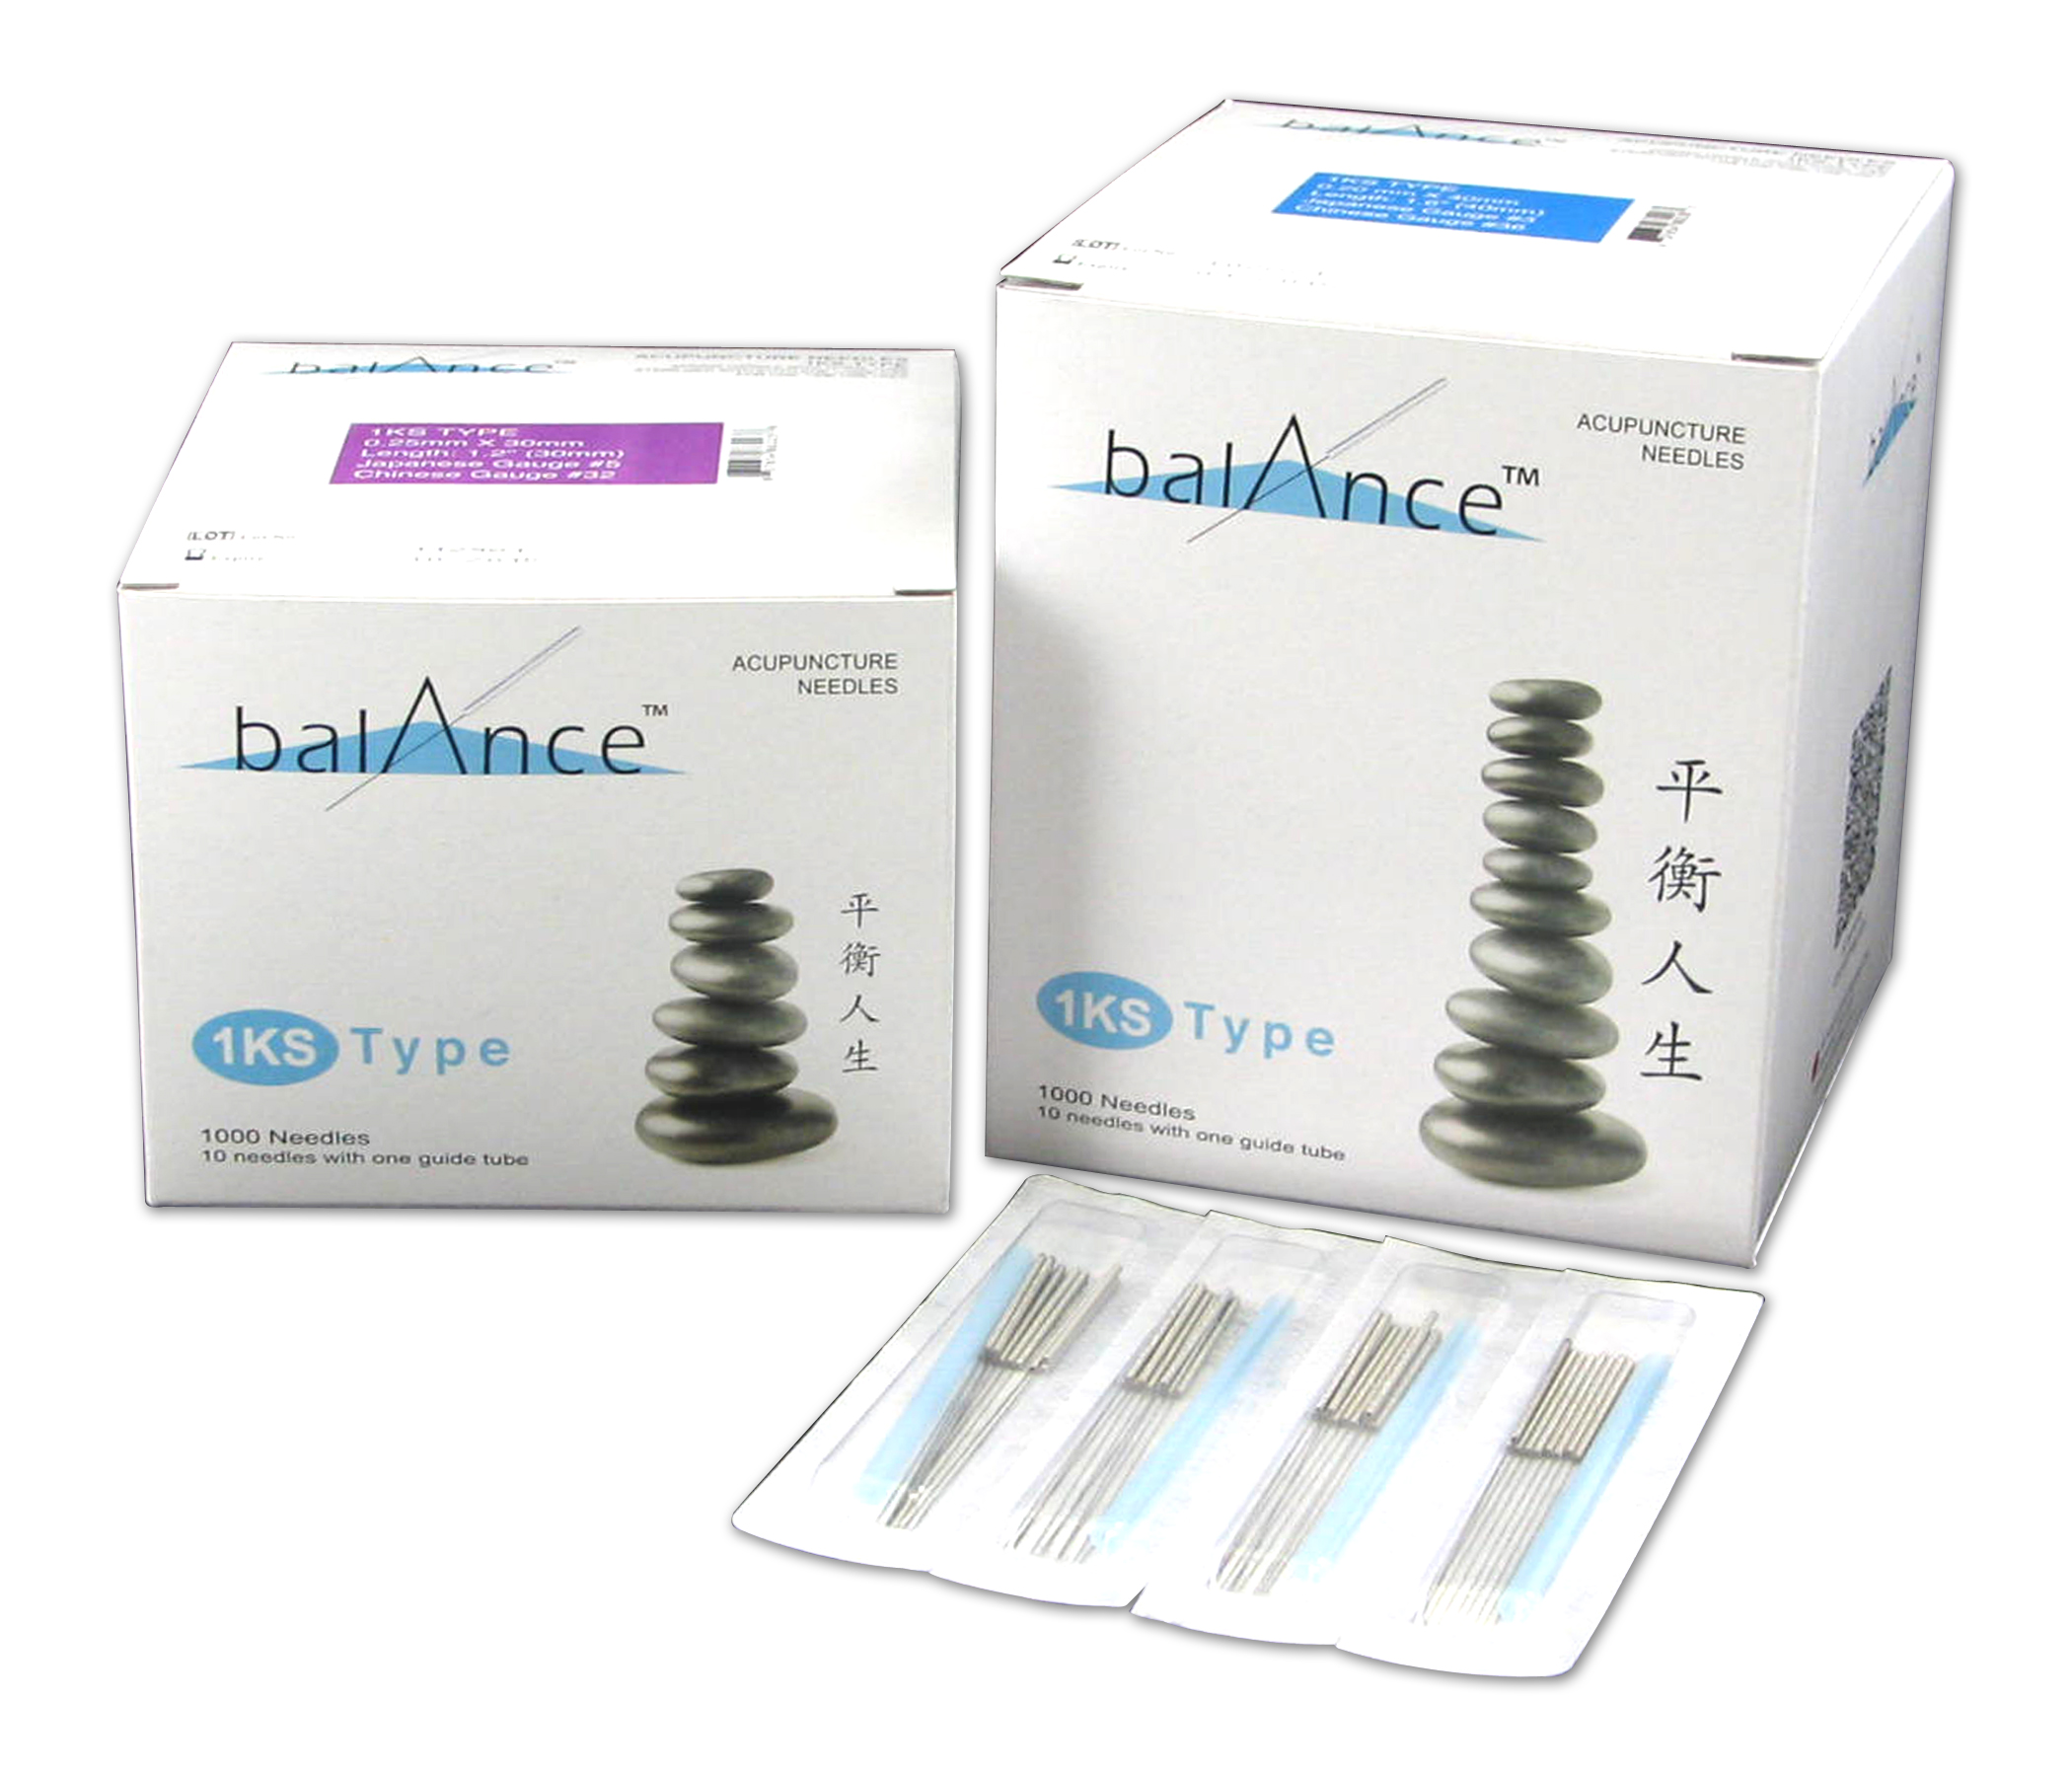 Balance KS1 Needle Image